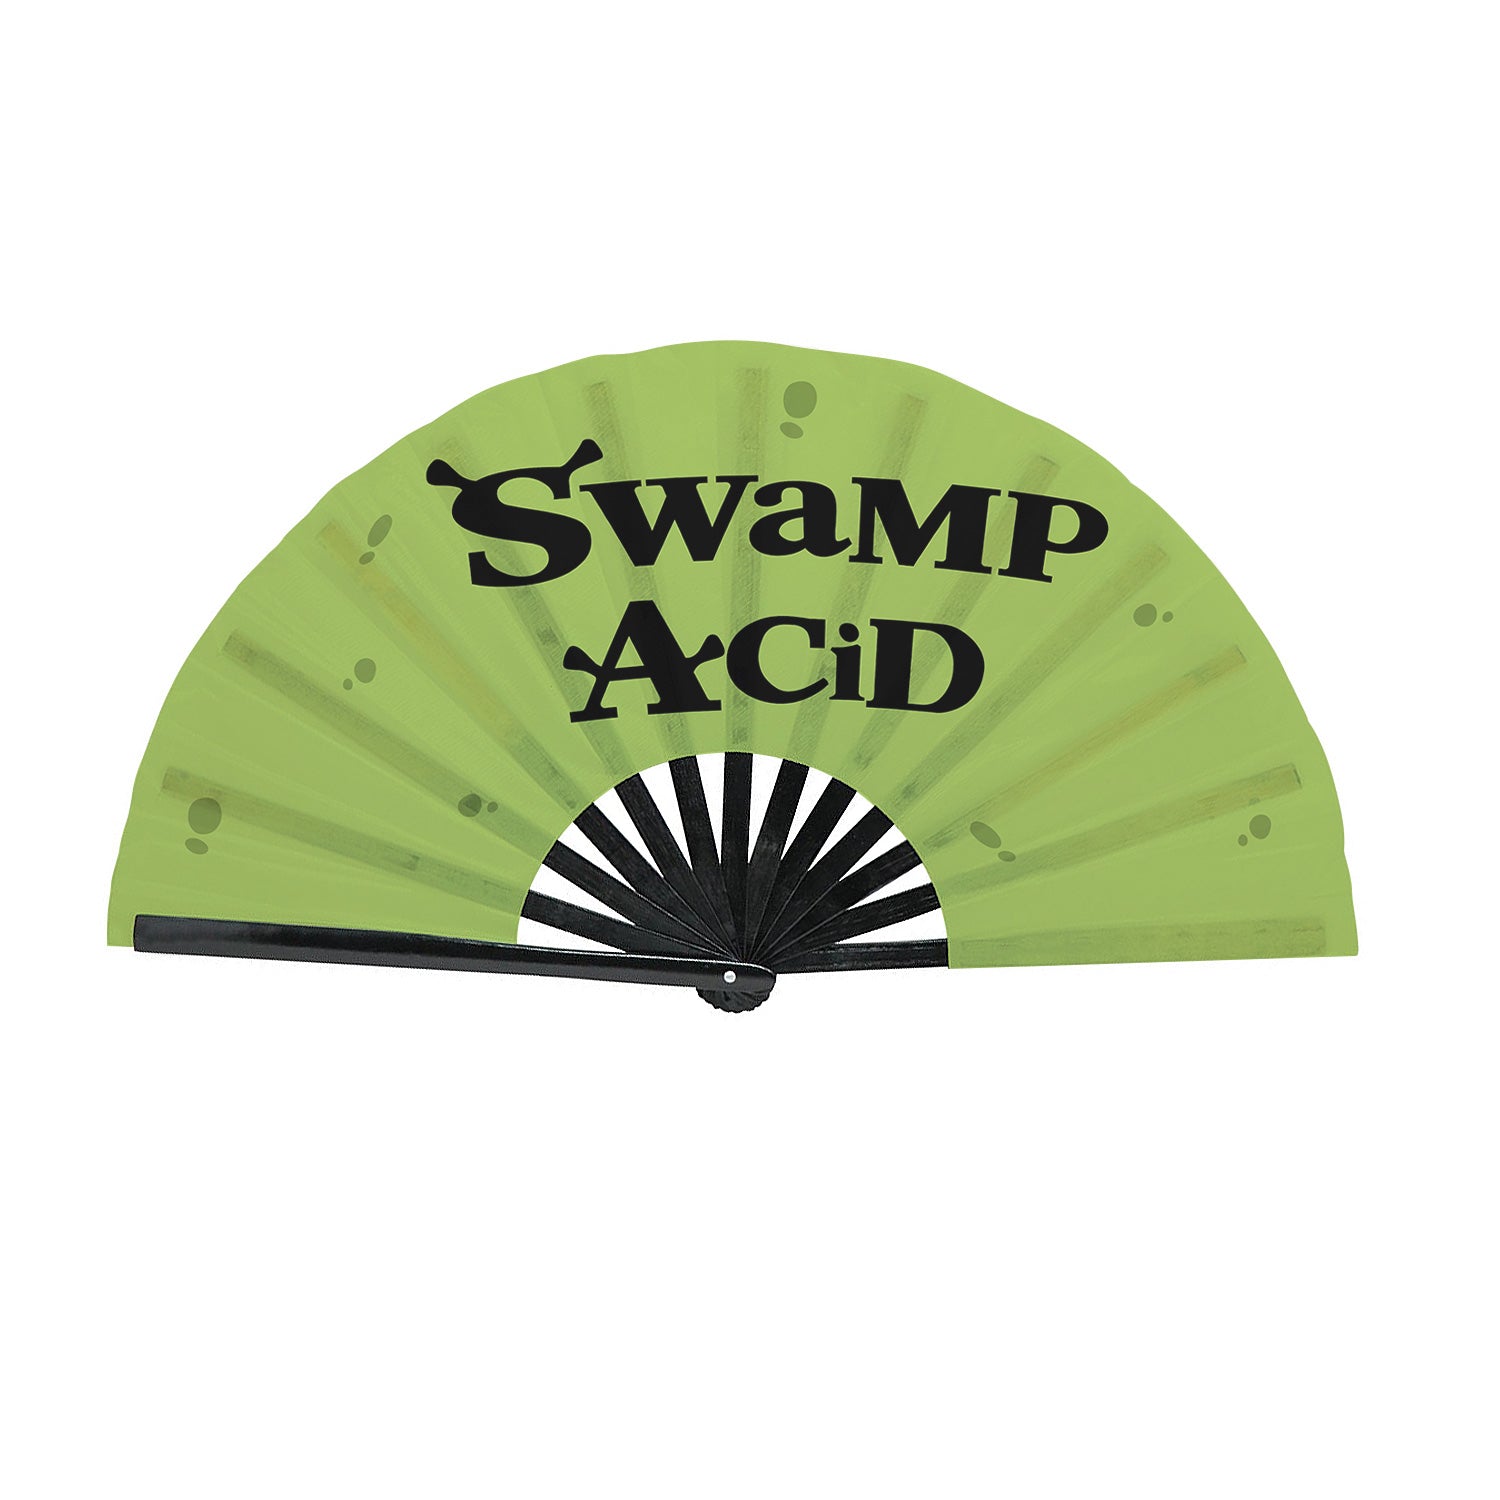 Brattery Acid - Swamp Acid Clack Fan